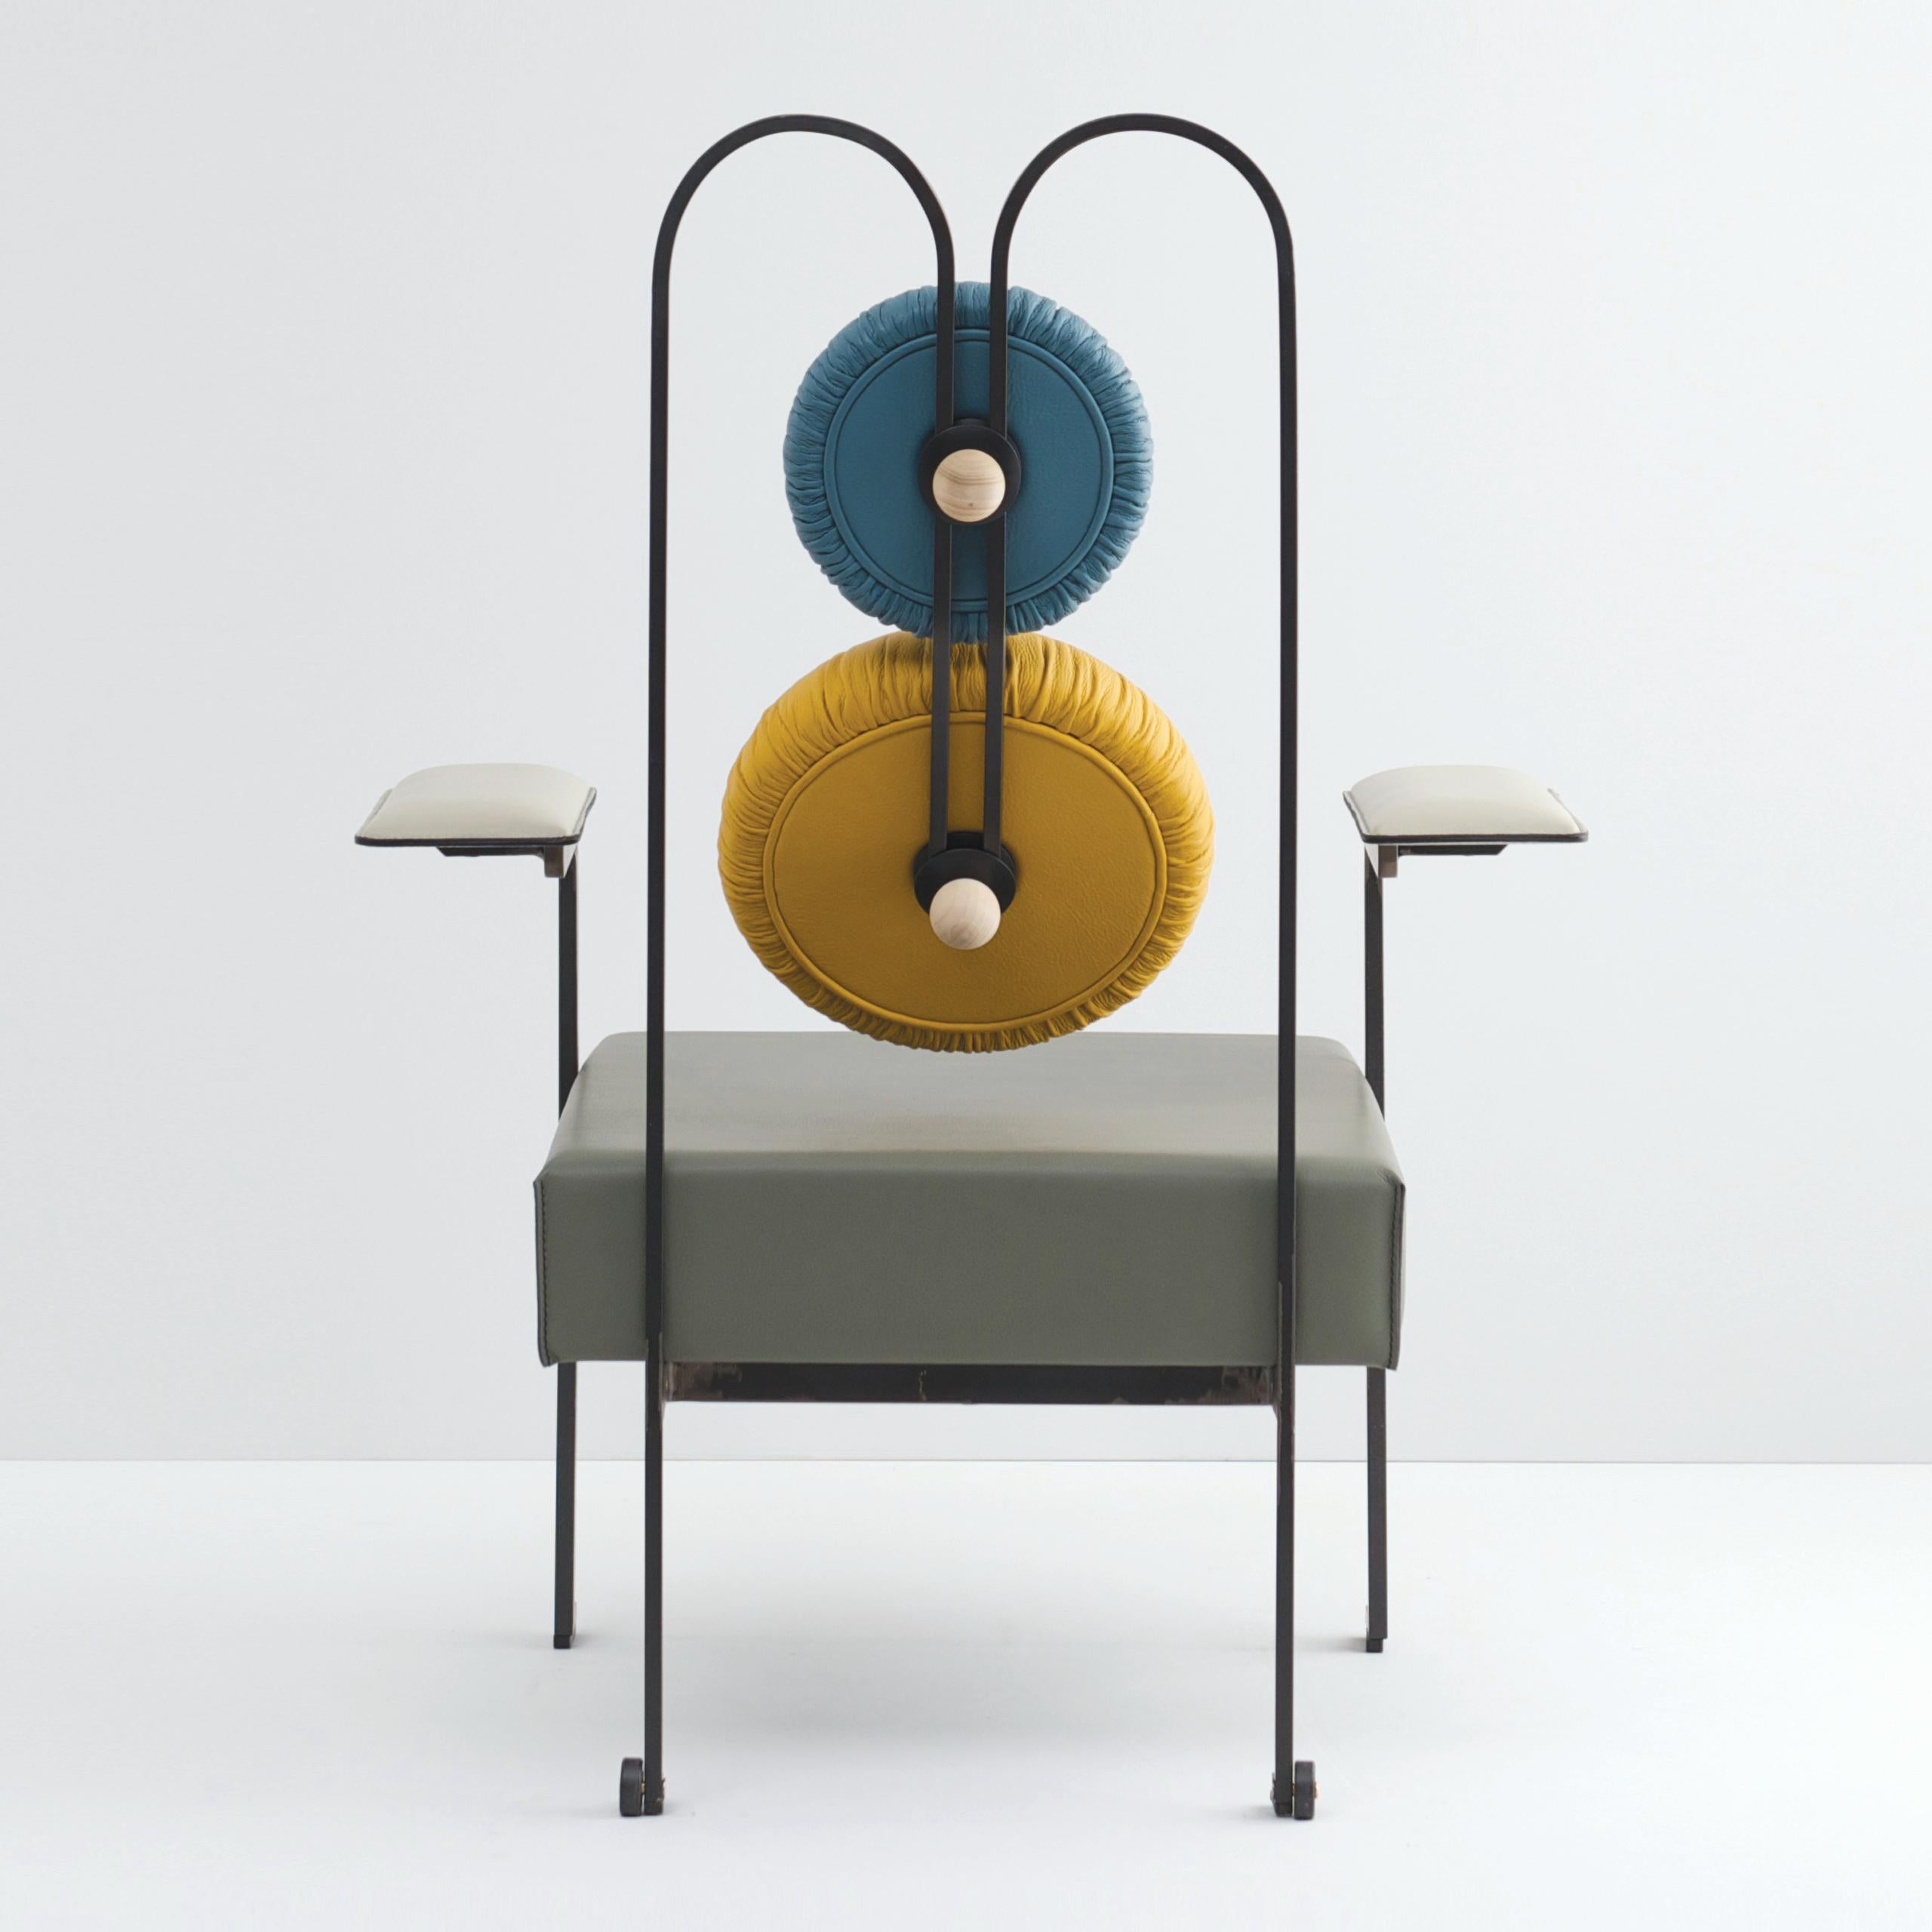 Der BiS Lounge Chair reduziert den stereotypen Sessel auf seine wesentlichen Elemente. Die dreifach gebogene hintere Metallstruktur erzeugt eine 